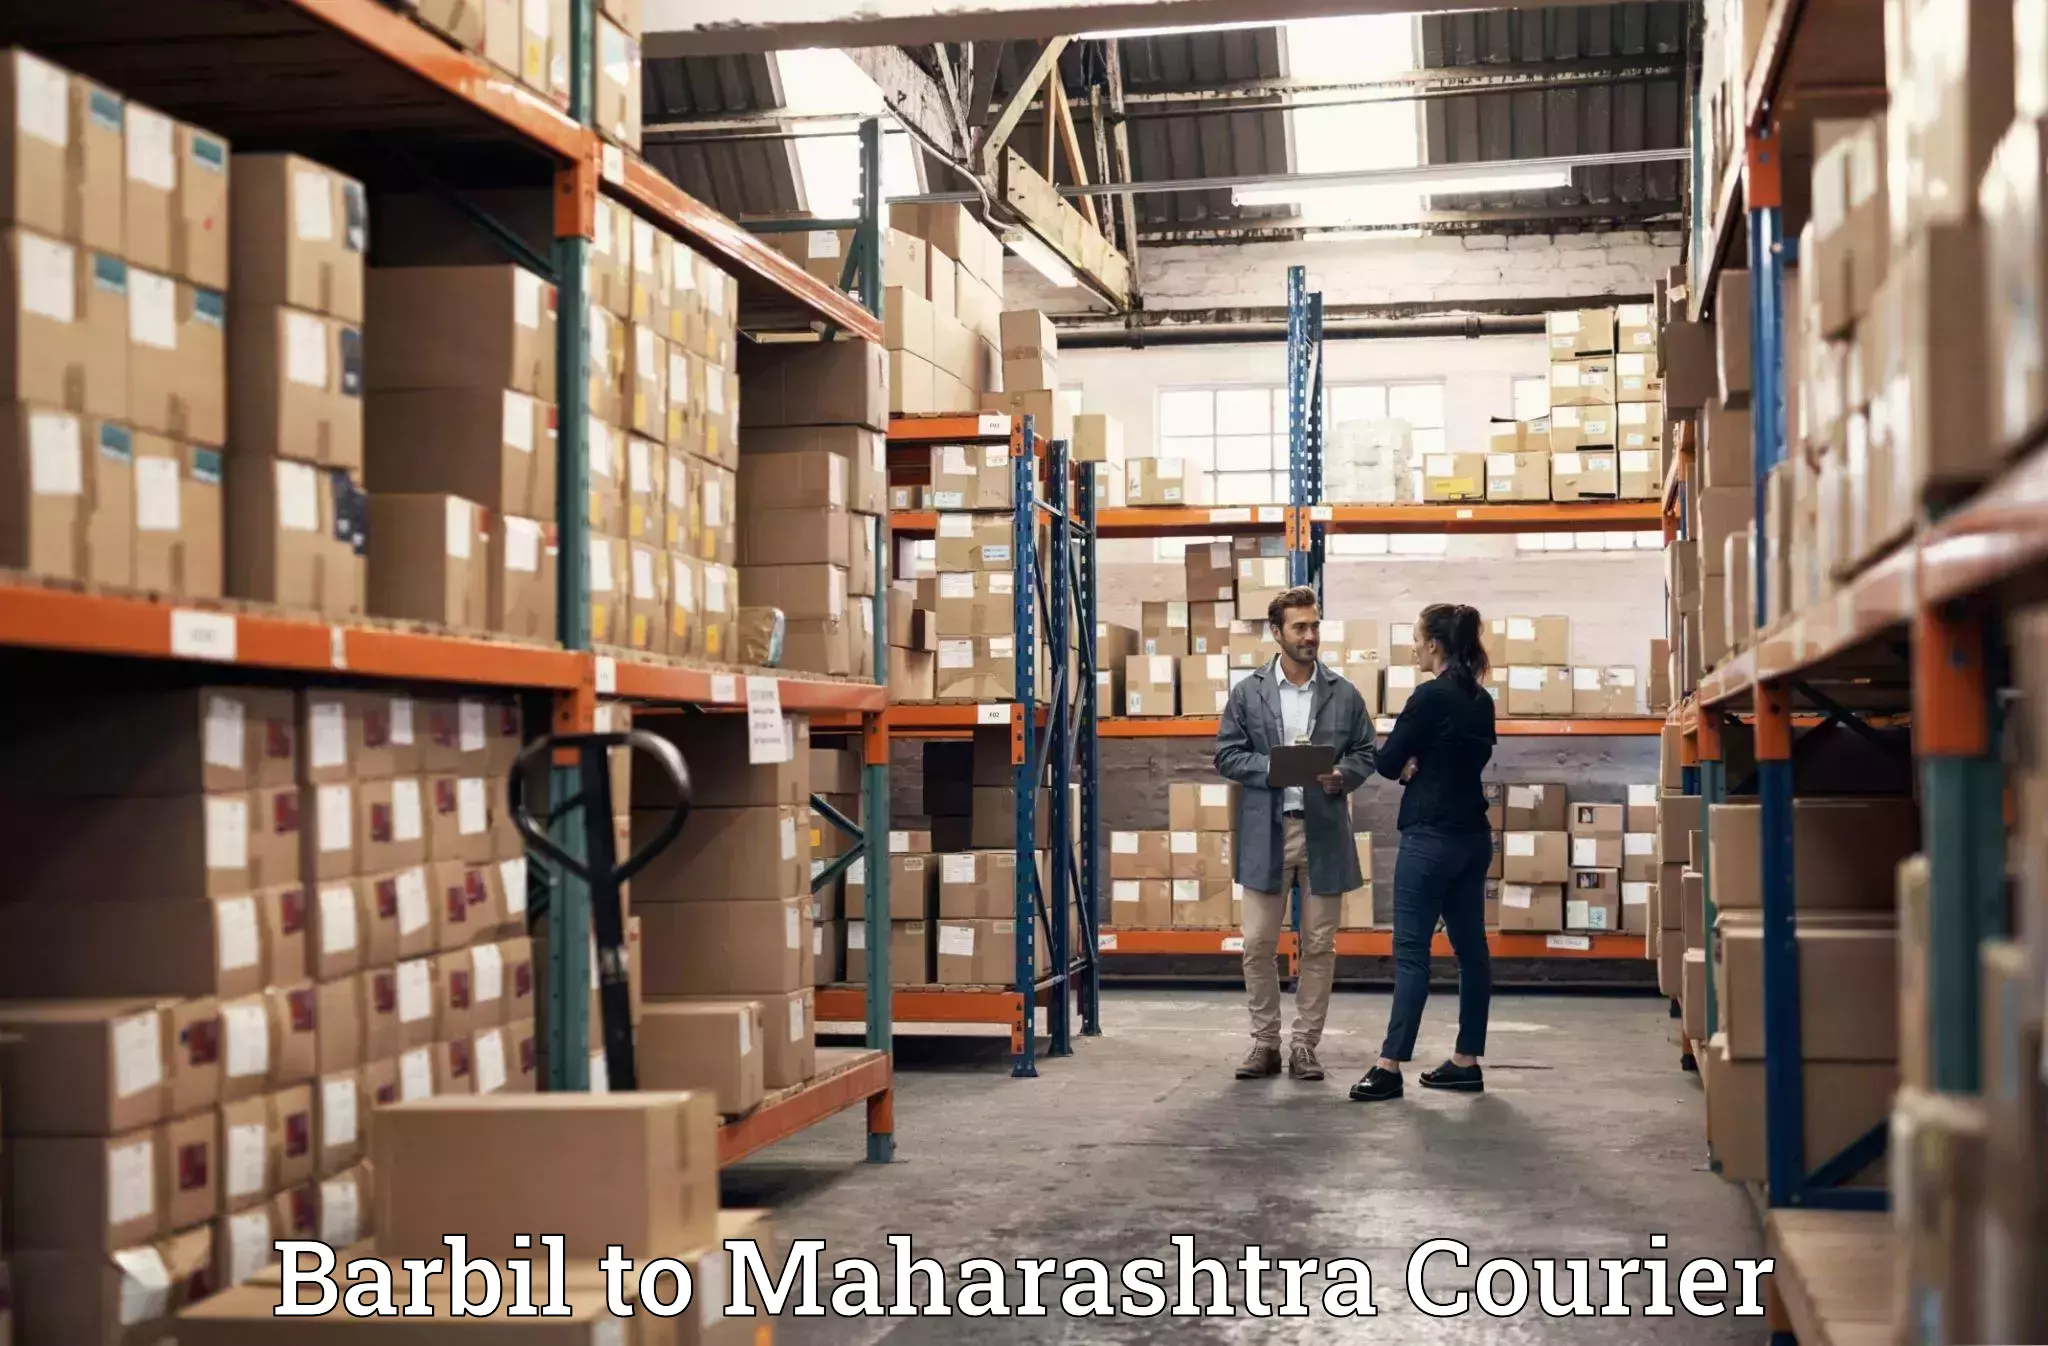 Trusted moving company Barbil to Maharashtra